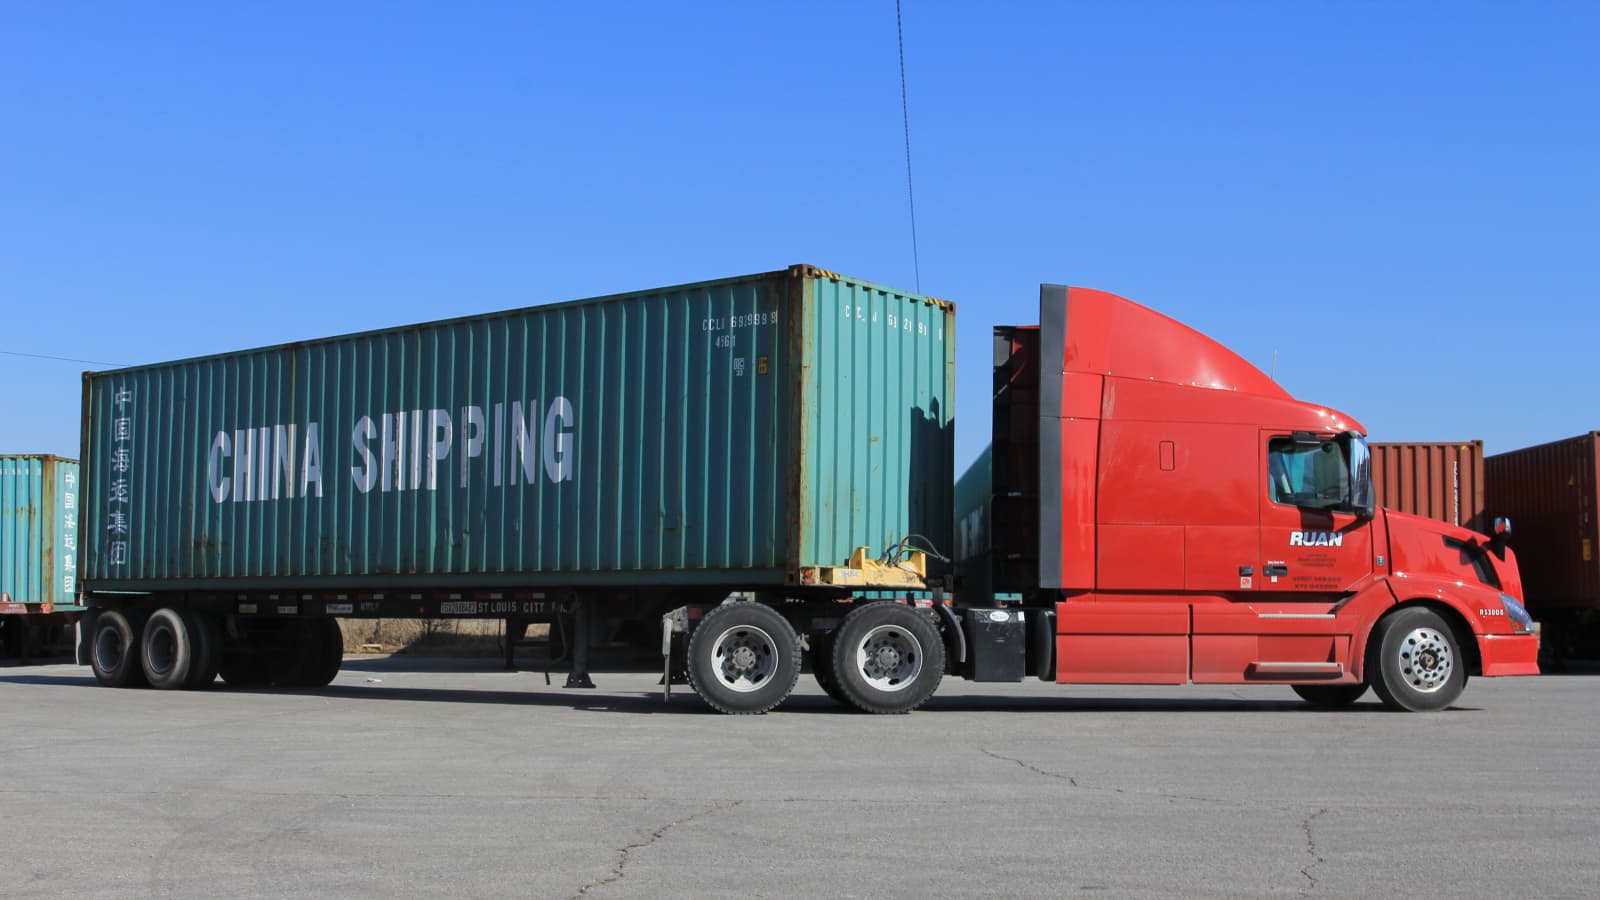 Перевозка грузов автомобильным транспортом имеет свой собственный набор проблем, но при принятии правильных мер поставщики логистических услуг могут наслаждаться более плавной ездой. DHL Logistics of Things